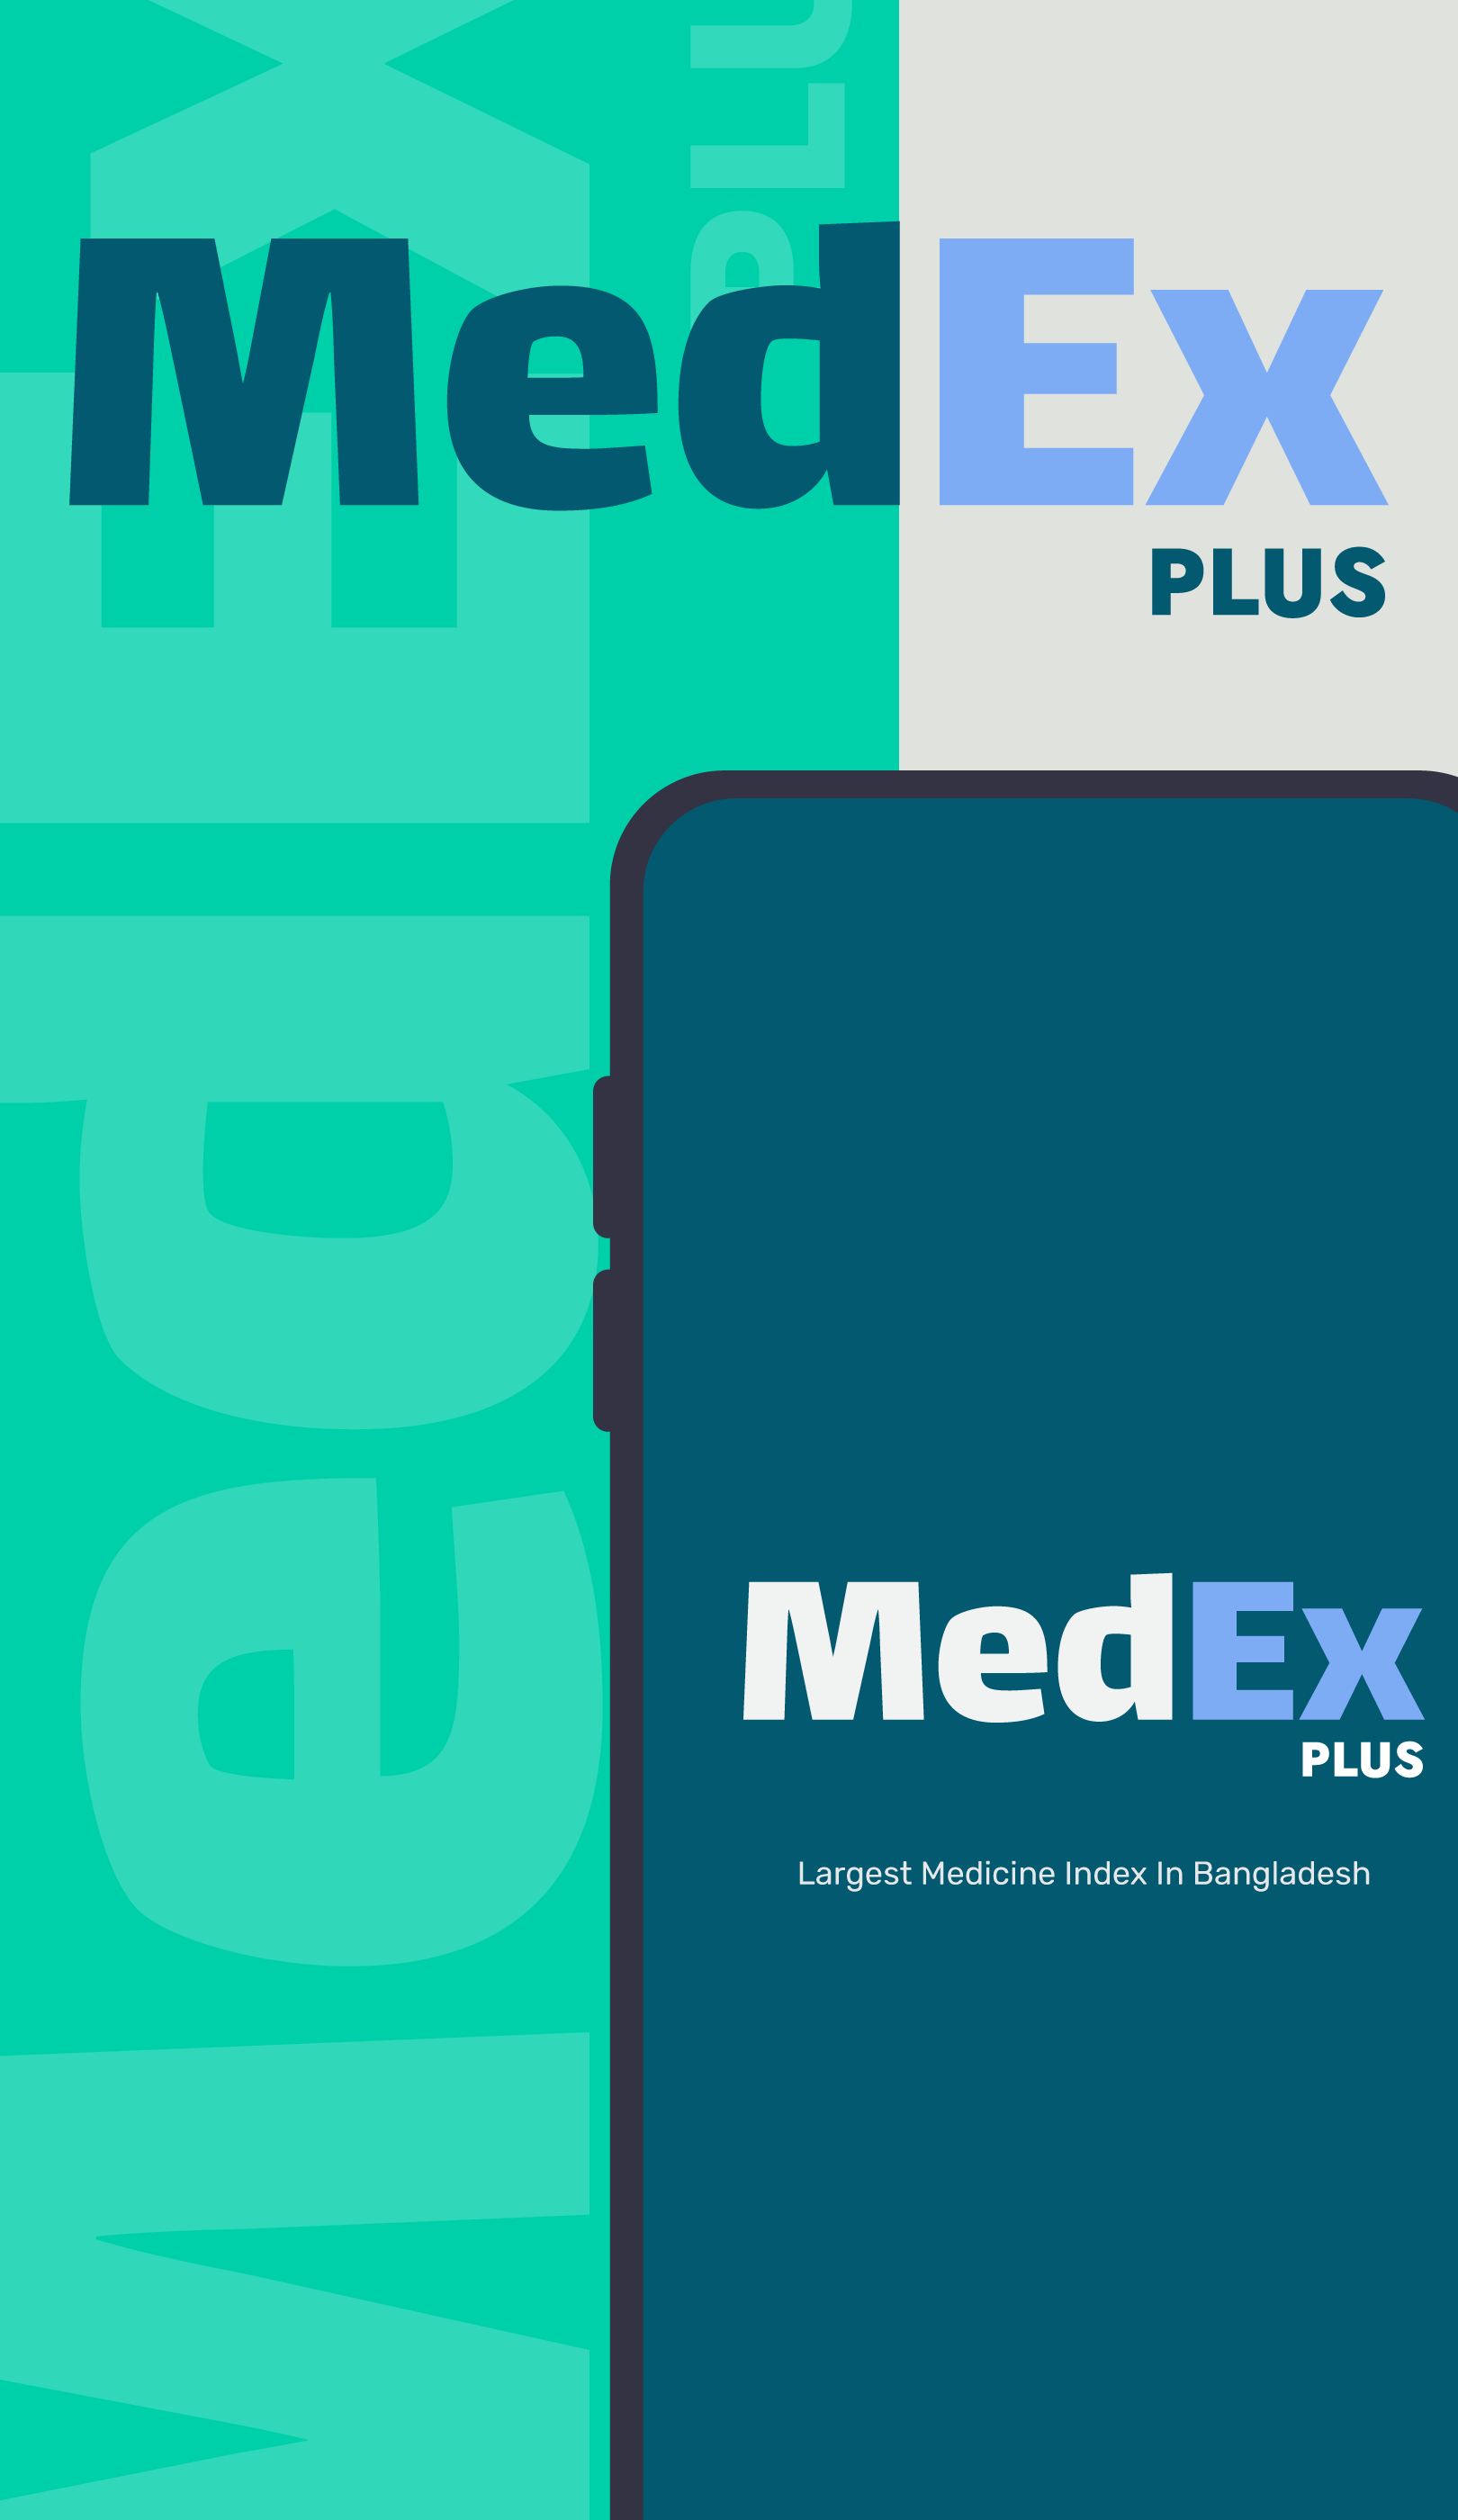 MedEx App